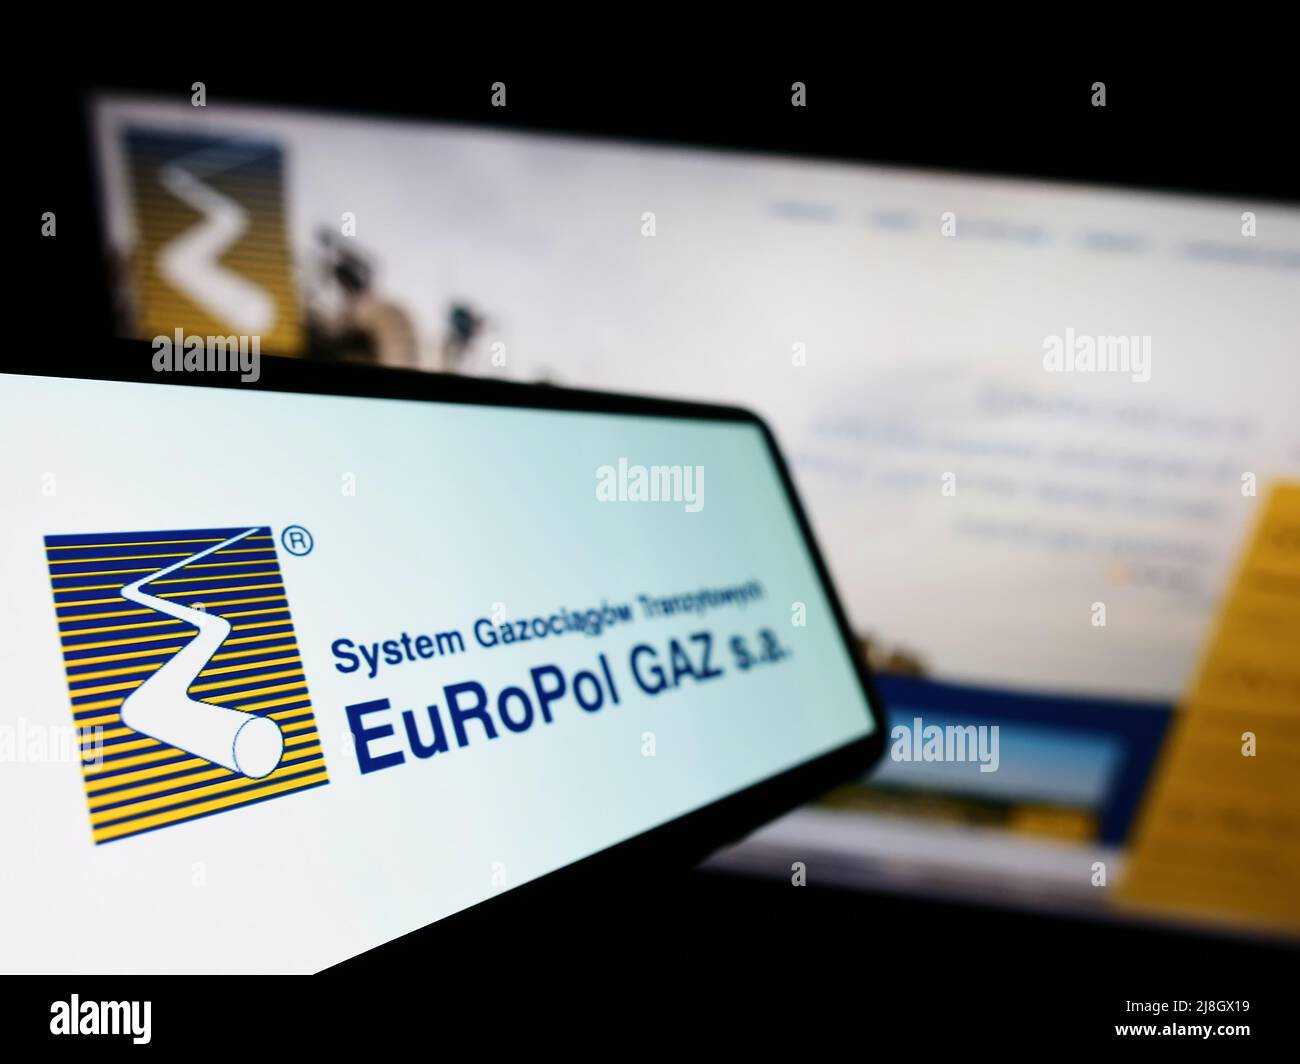 Cellulare con logo della società polacca di gasdotti Europol GAZ s.a. sullo schermo di fronte al sito web aziendale. Mettere a fuoco sulla sinistra del display del telefono. Foto Stock